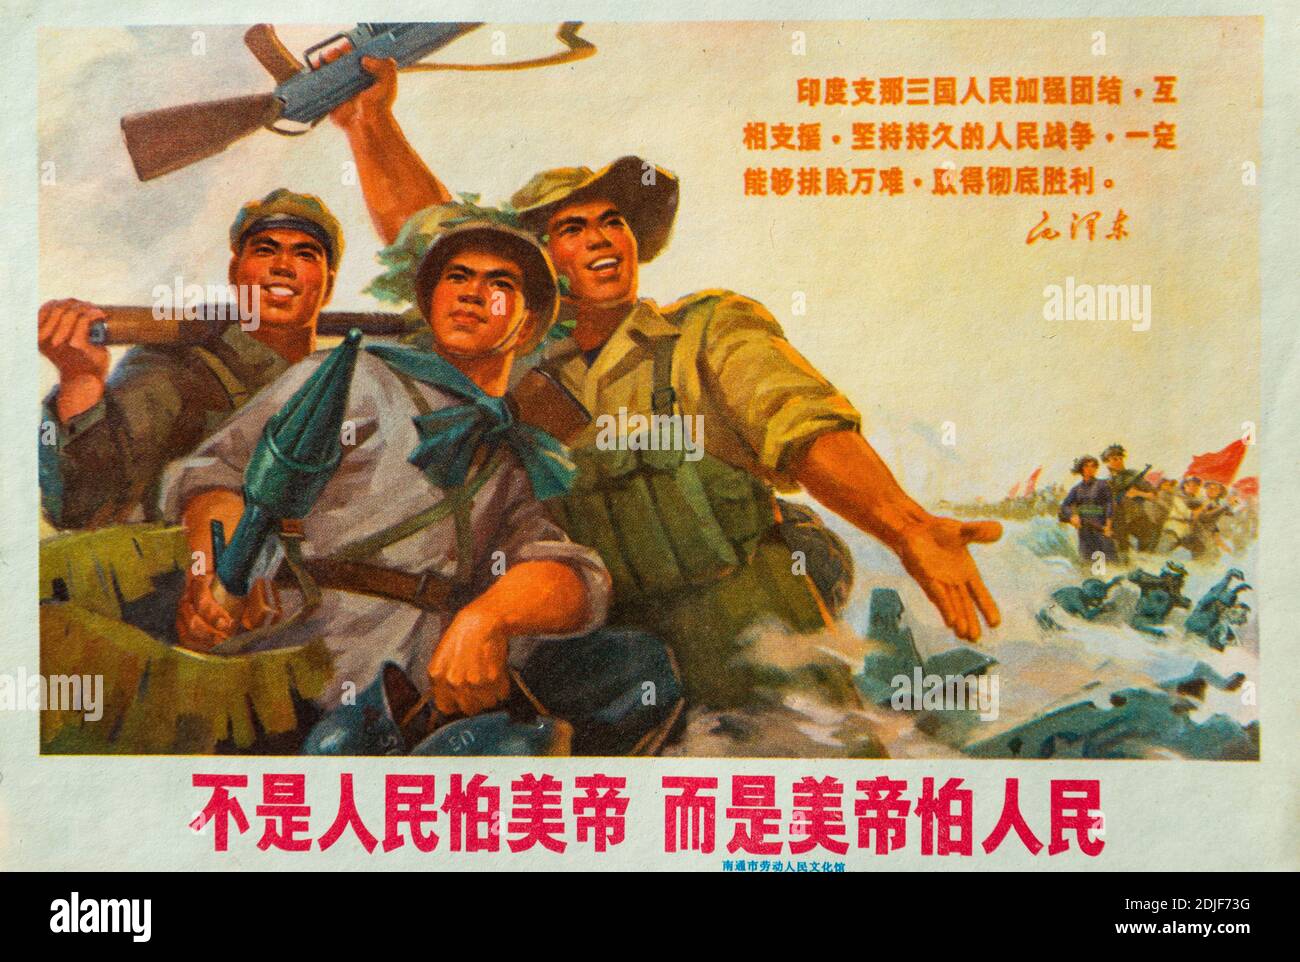 Une véritable affiche de propagande pendant la Révolution culturelle en Chine. Les personnages chinois ont lu : ce n'est pas que le peuple ait peur de l'impe américaine Banque D'Images